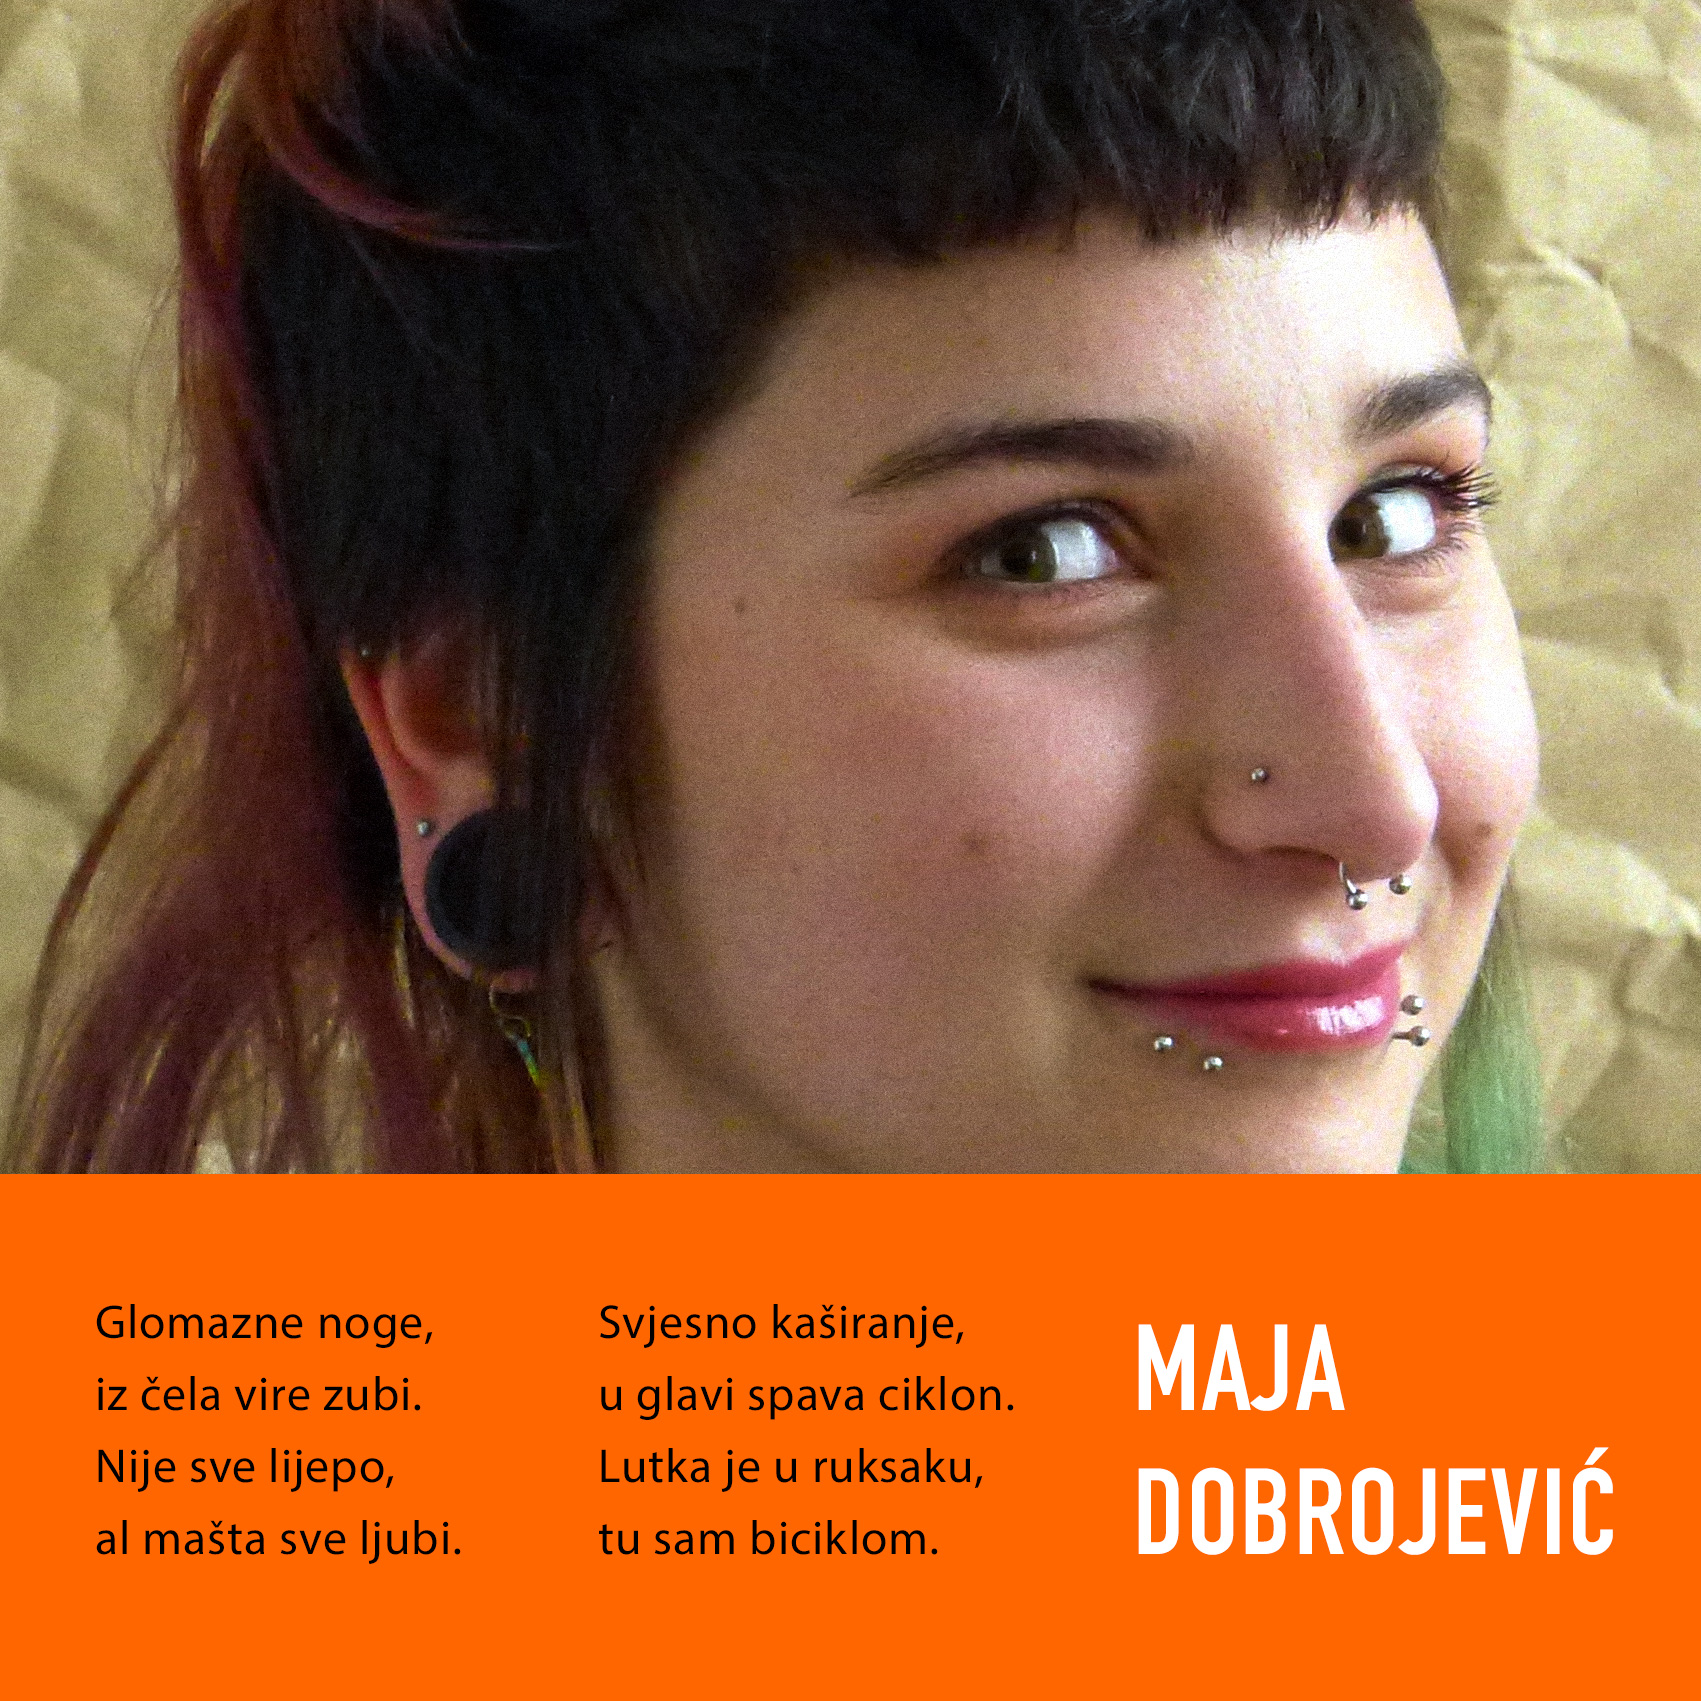 Maja Dobrojević, foto: Saša Došen